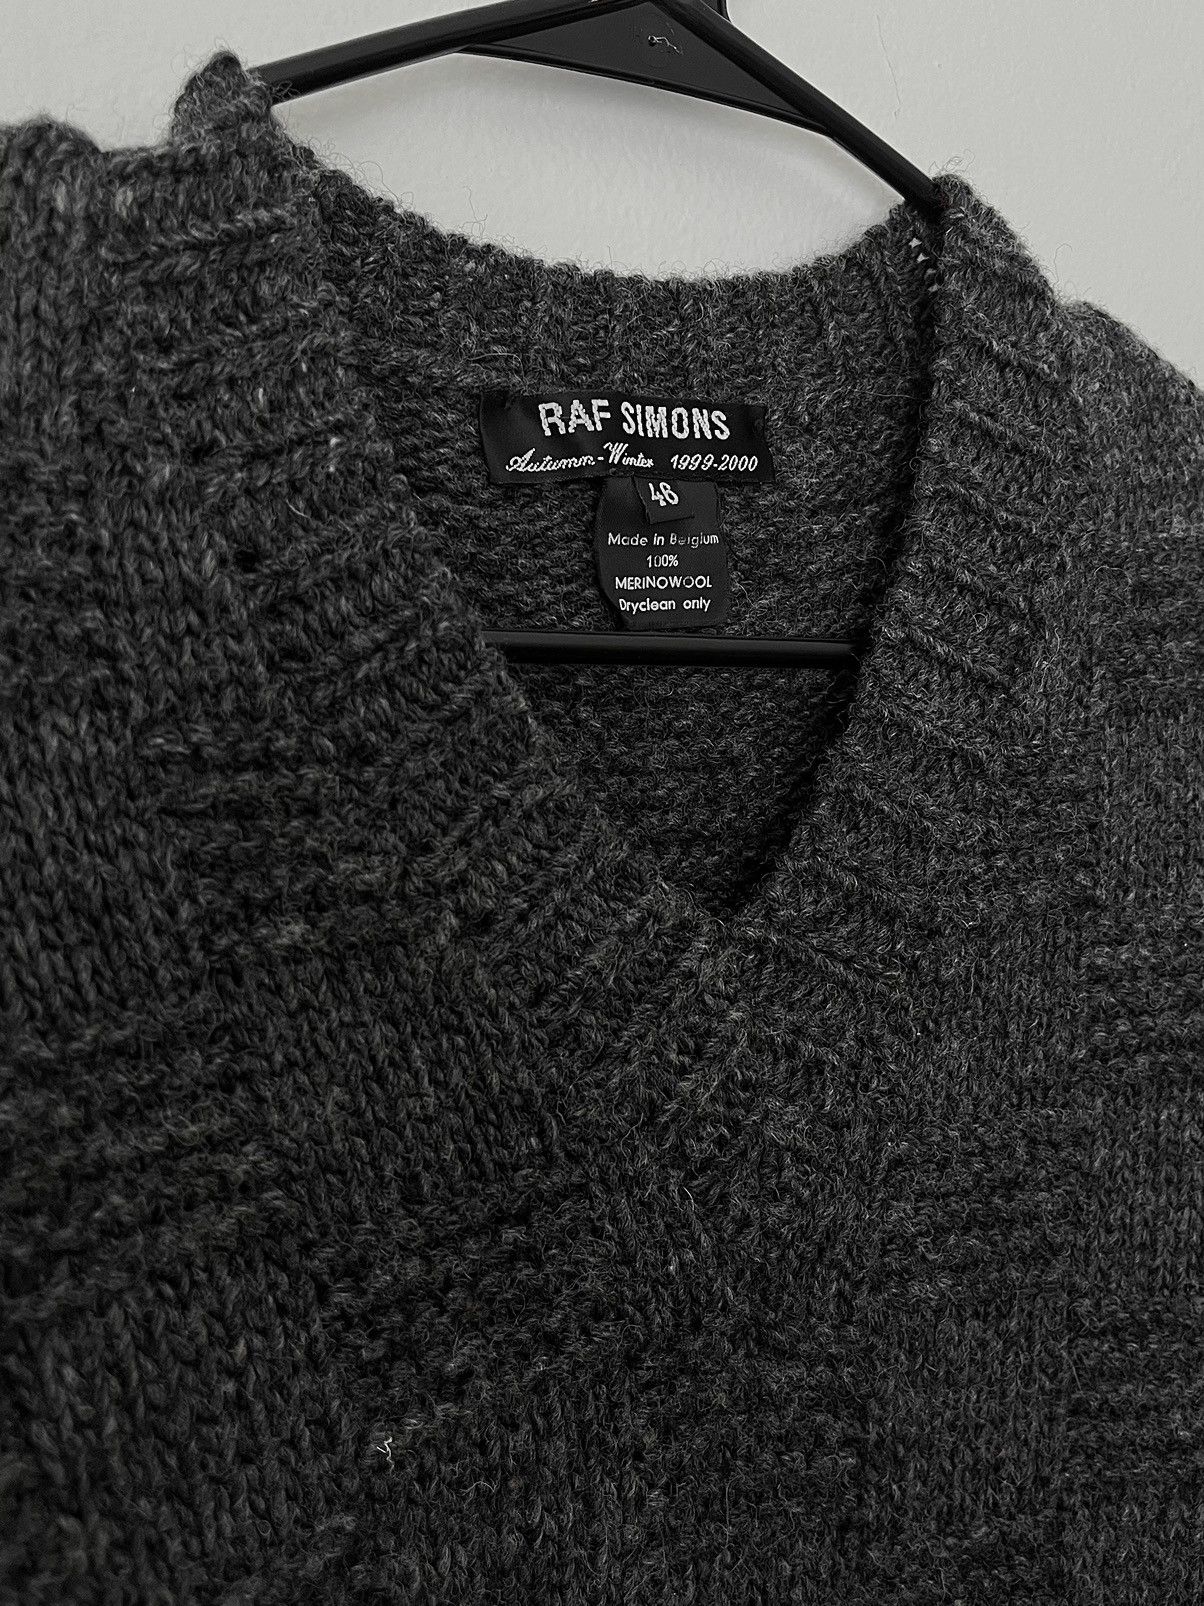 Raf Simons fw99 “disorder” cross pattern v neck knit sweater | Grailed